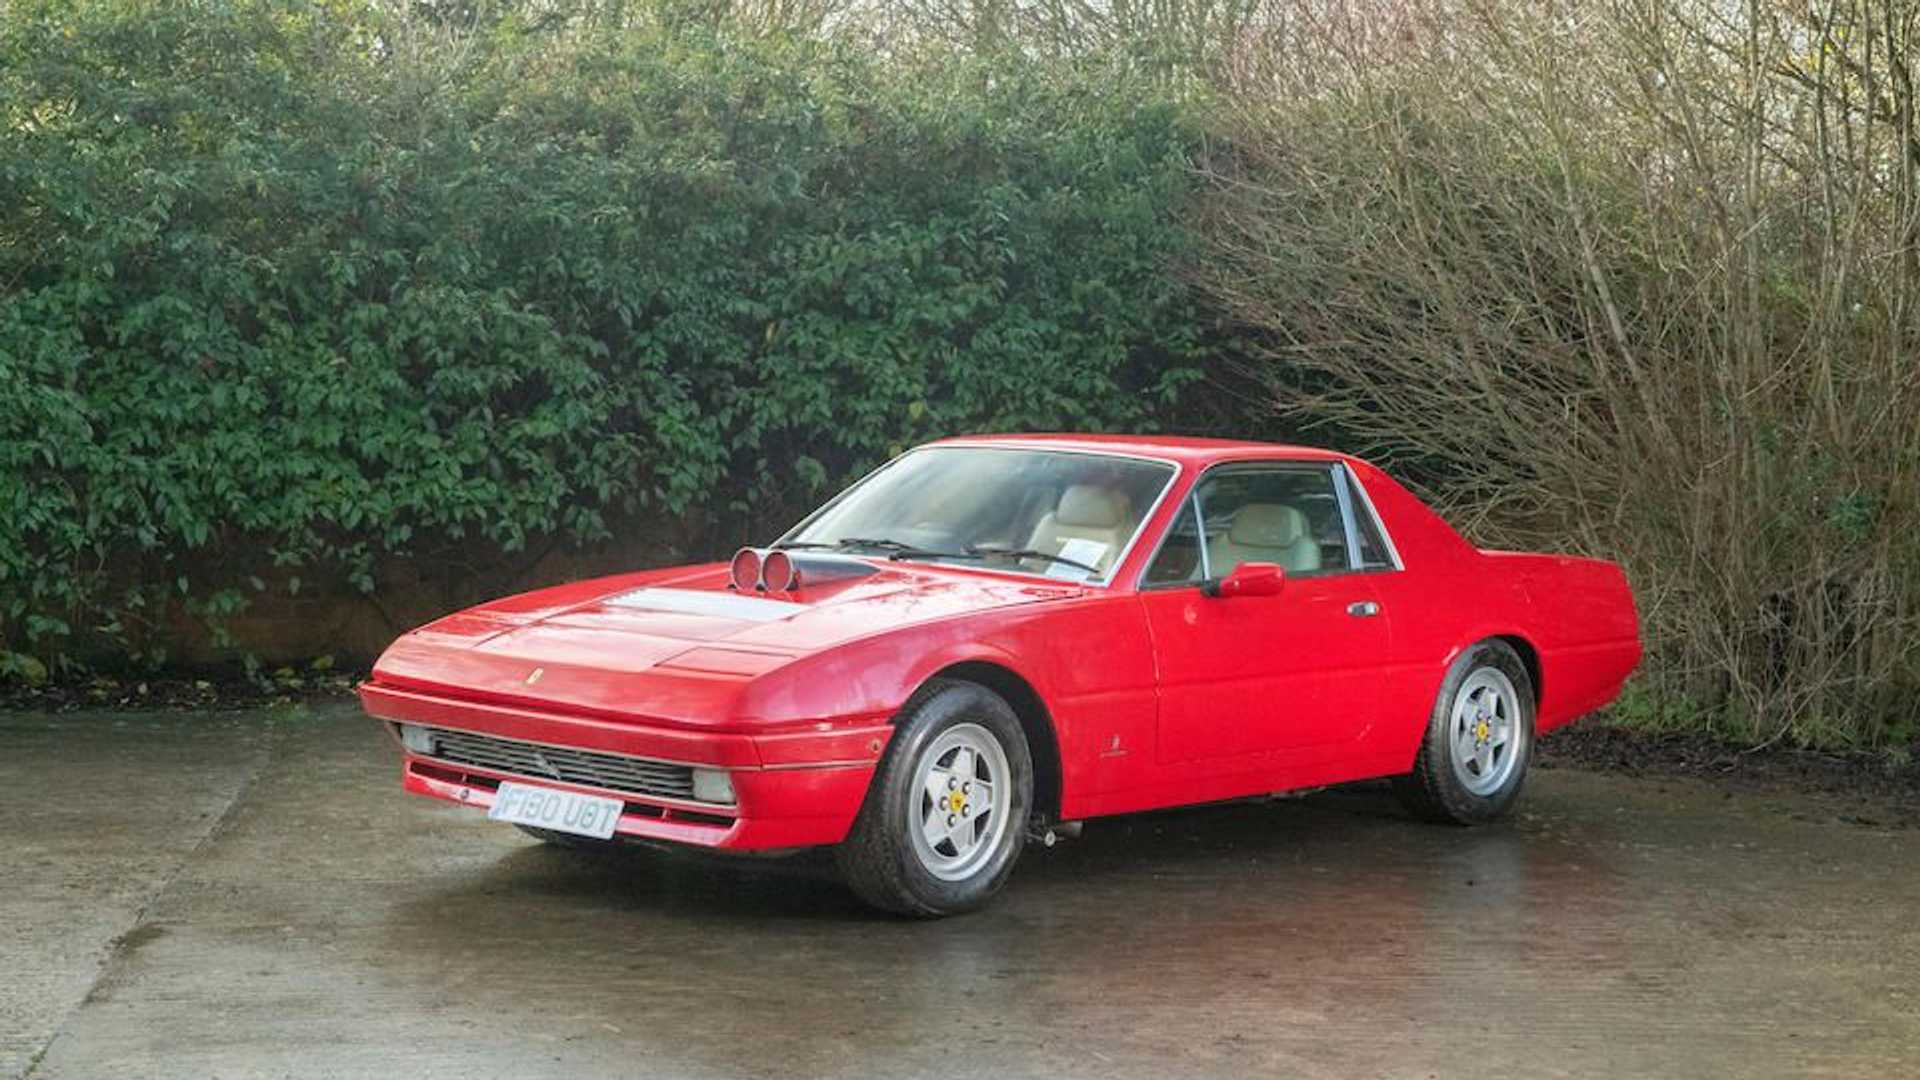 Във Великобритания продават Ferrari на цената на стара Scoda